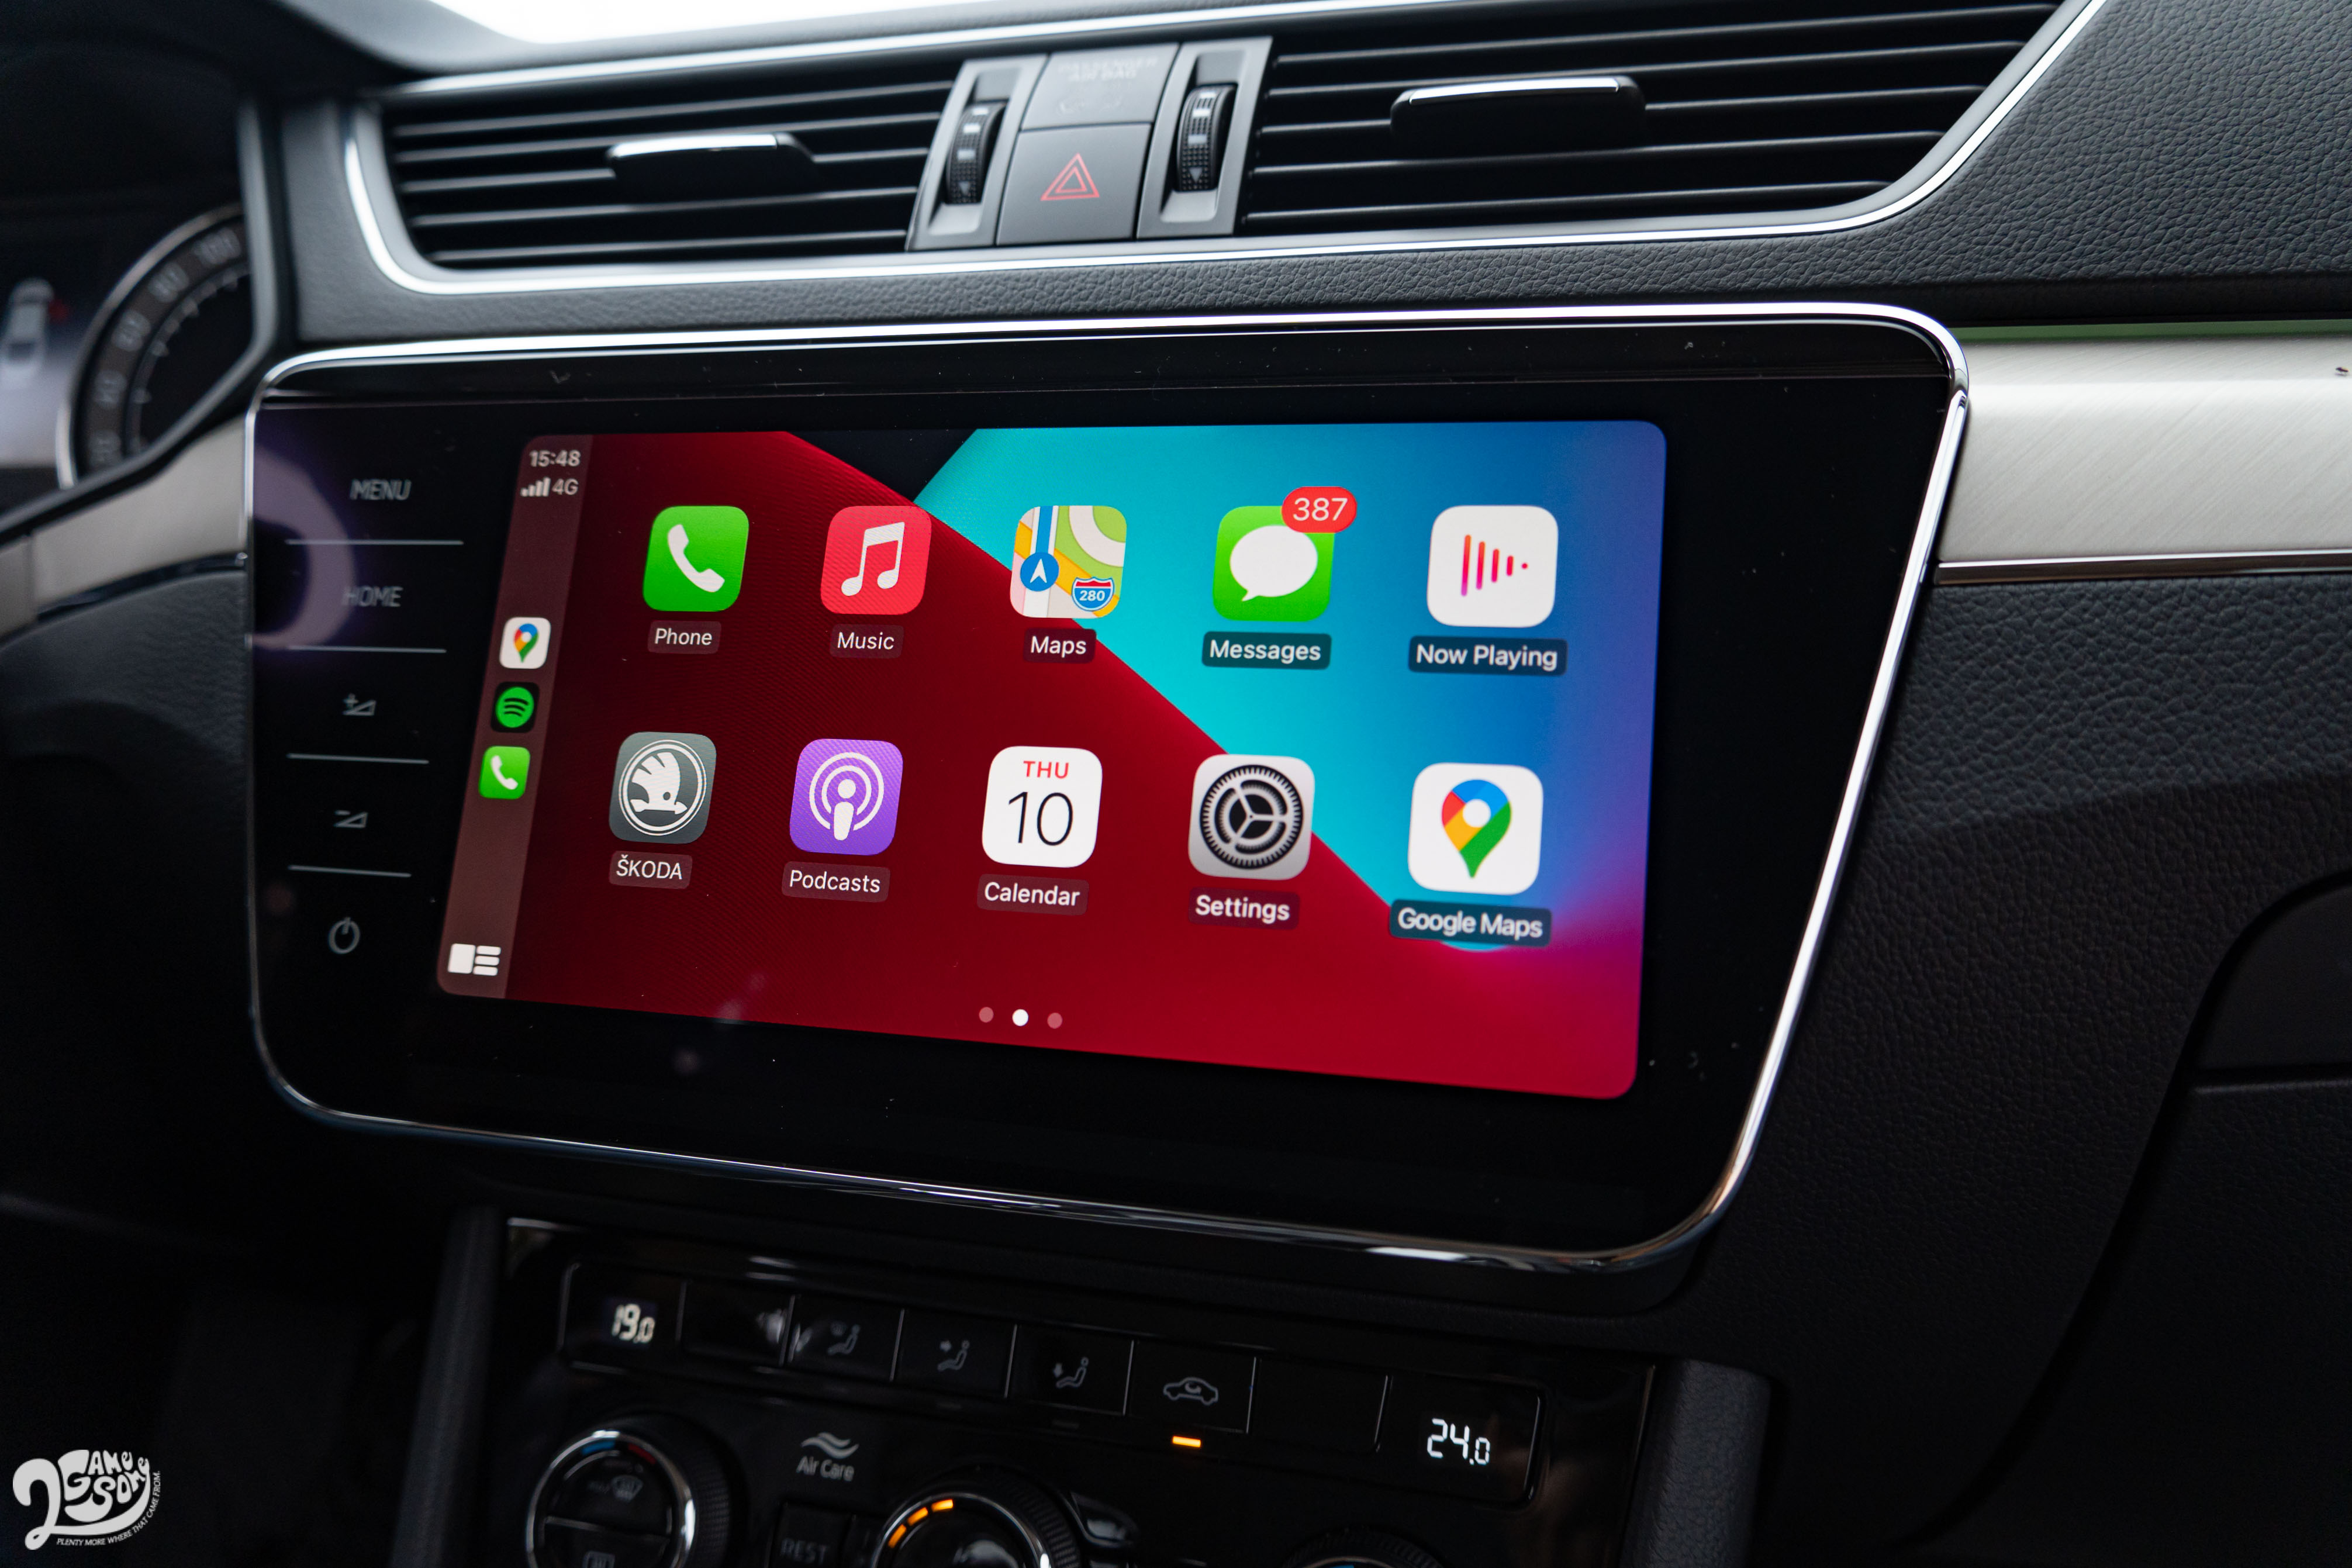 中央觸控螢幕支援 Apple CarPlay，原廠也正在為 Android Auto 申請 Google 授權，將來也可以透過回廠升級開通。